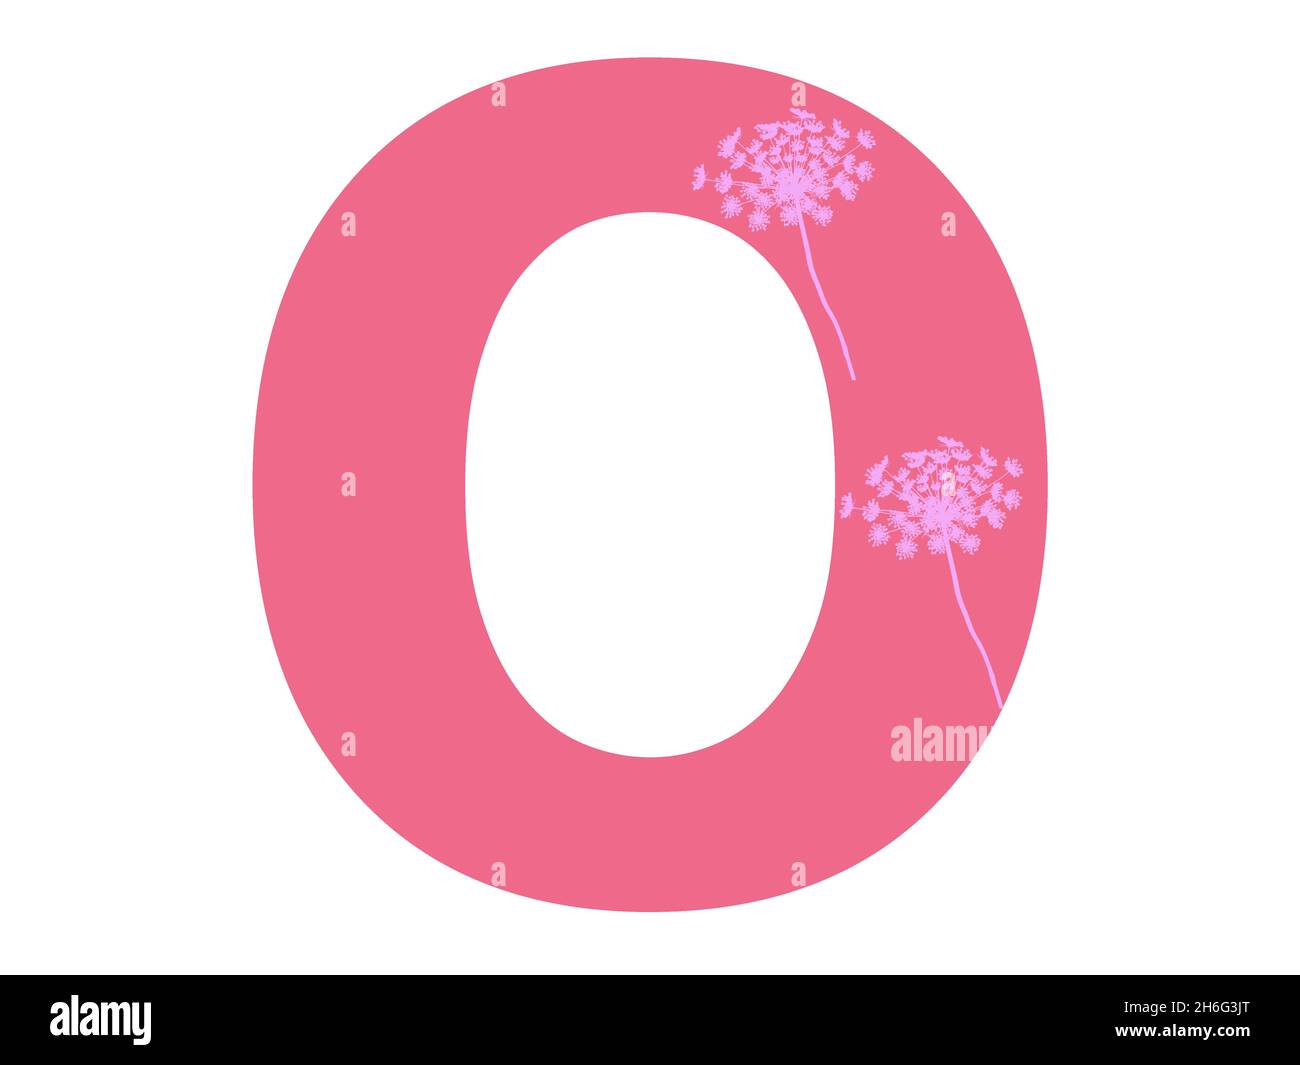 Lettera o dell'alfabeto realizzata con una silhouette di fiori rosa su sfondo rosa scuro, la lettera è isolata su sfondo bianco Foto Stock